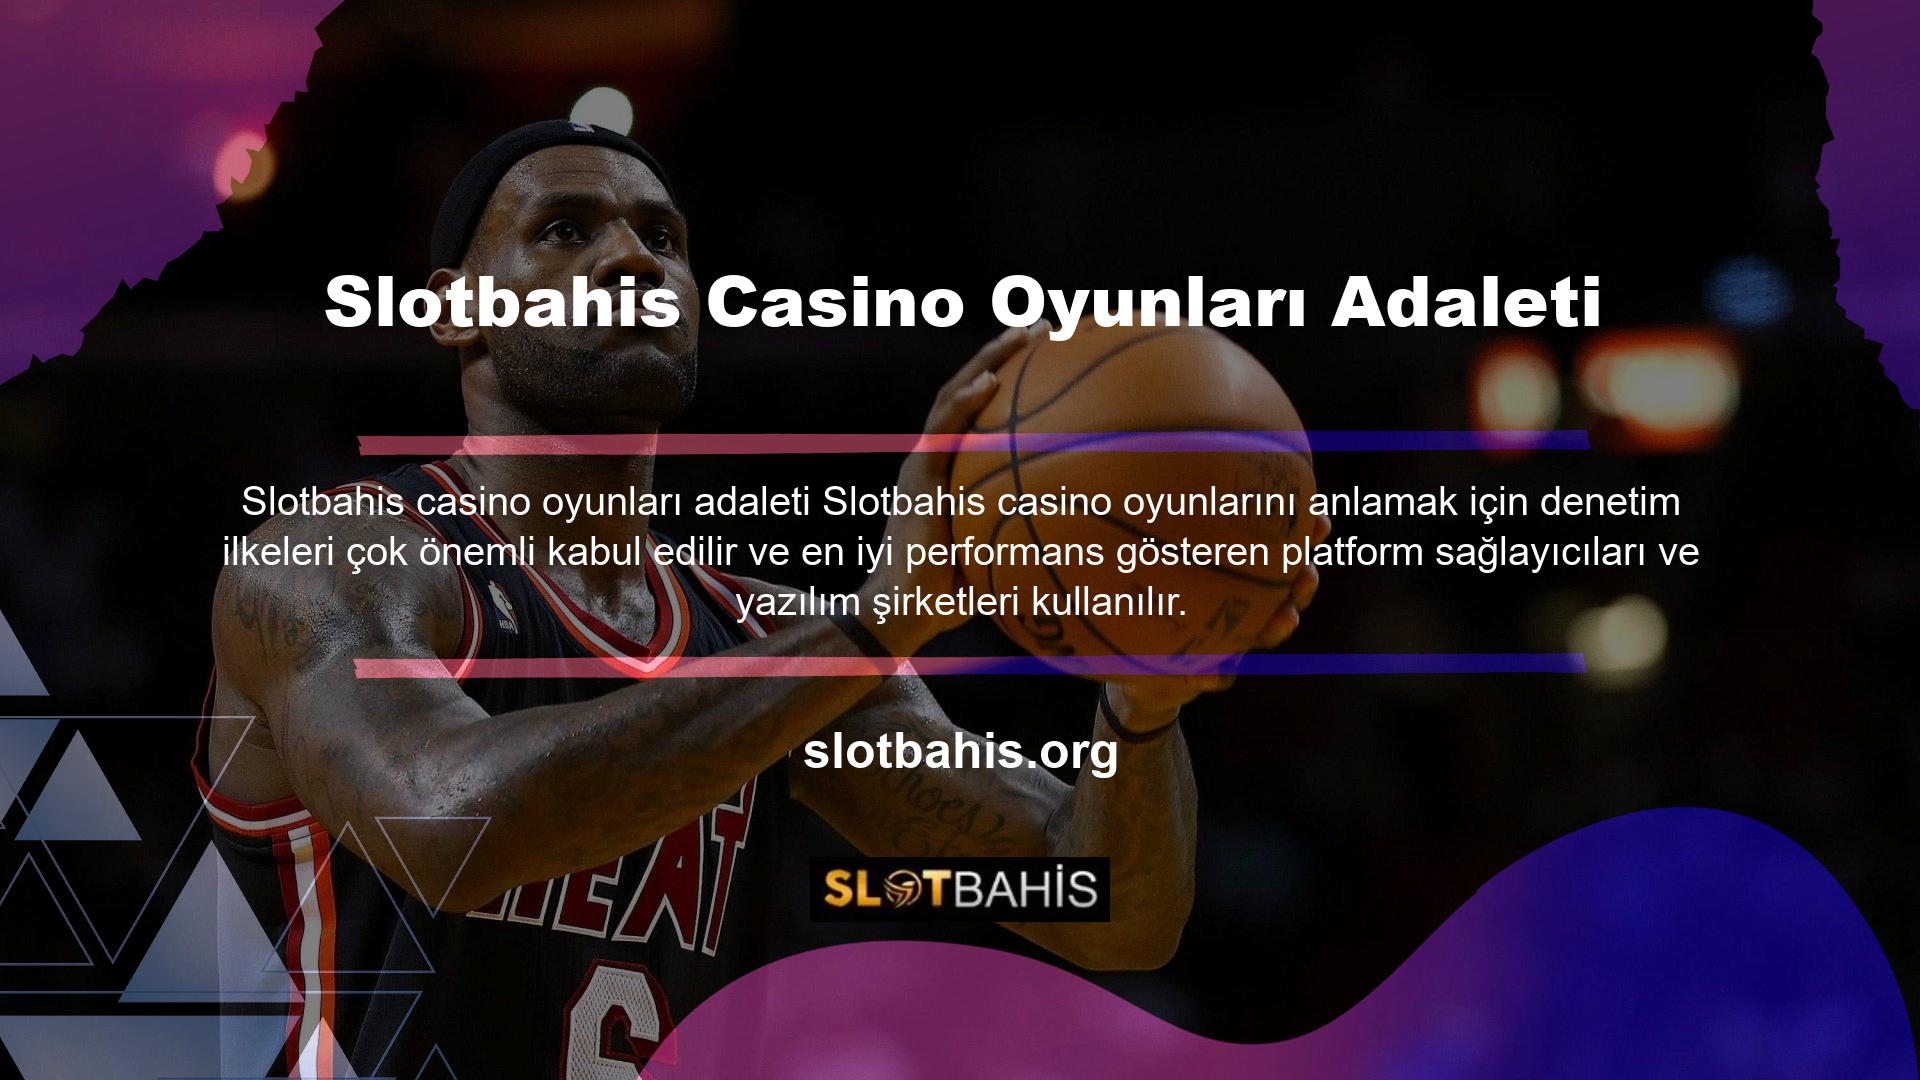 Slotbahis Casinodaki oyunlar adil, güvenilirdir ve tüm üyelere eşit davranır